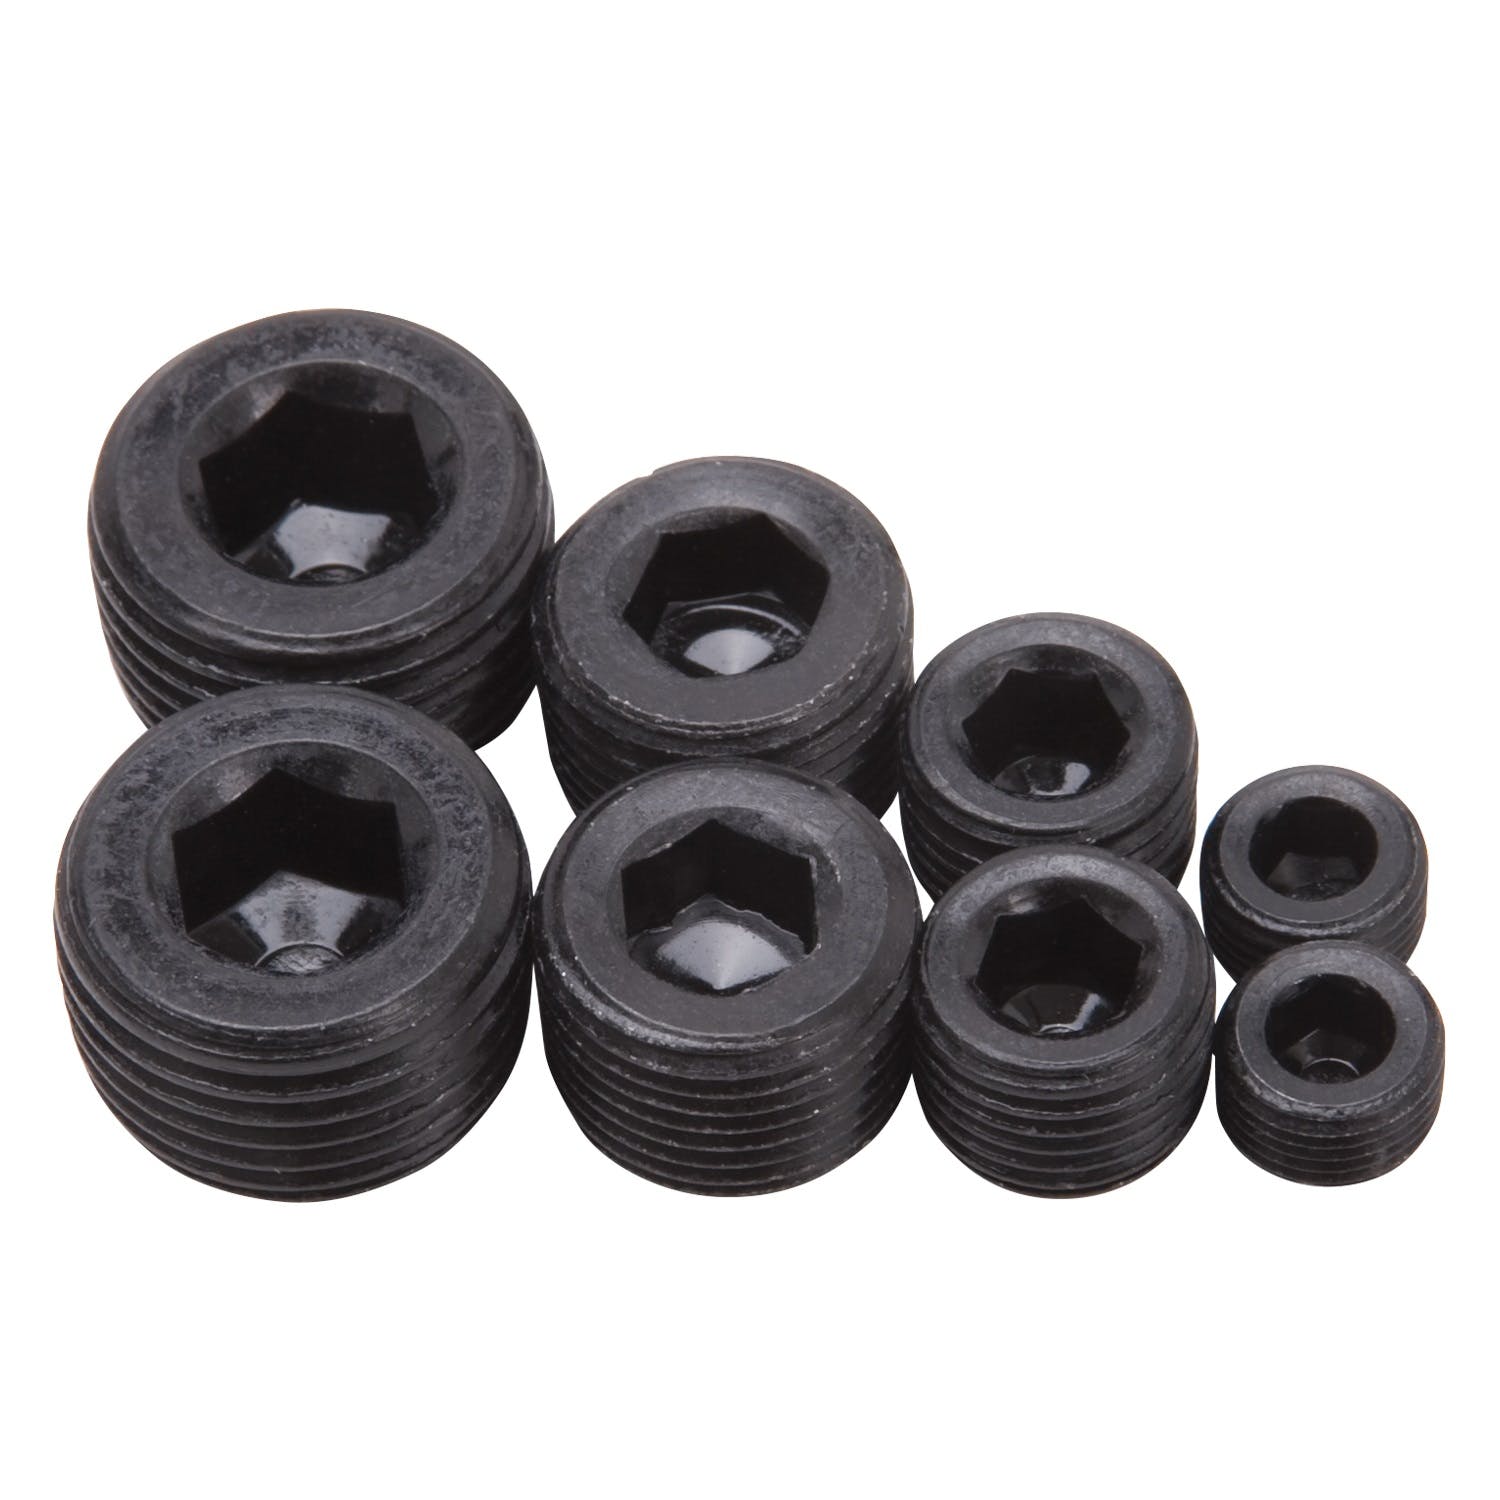 Edelbrock 8051 Socket Head Pipe Plugs in Black Finish - 1/8, 1/4, 3/8, 1/2 NPT (Qty 8)